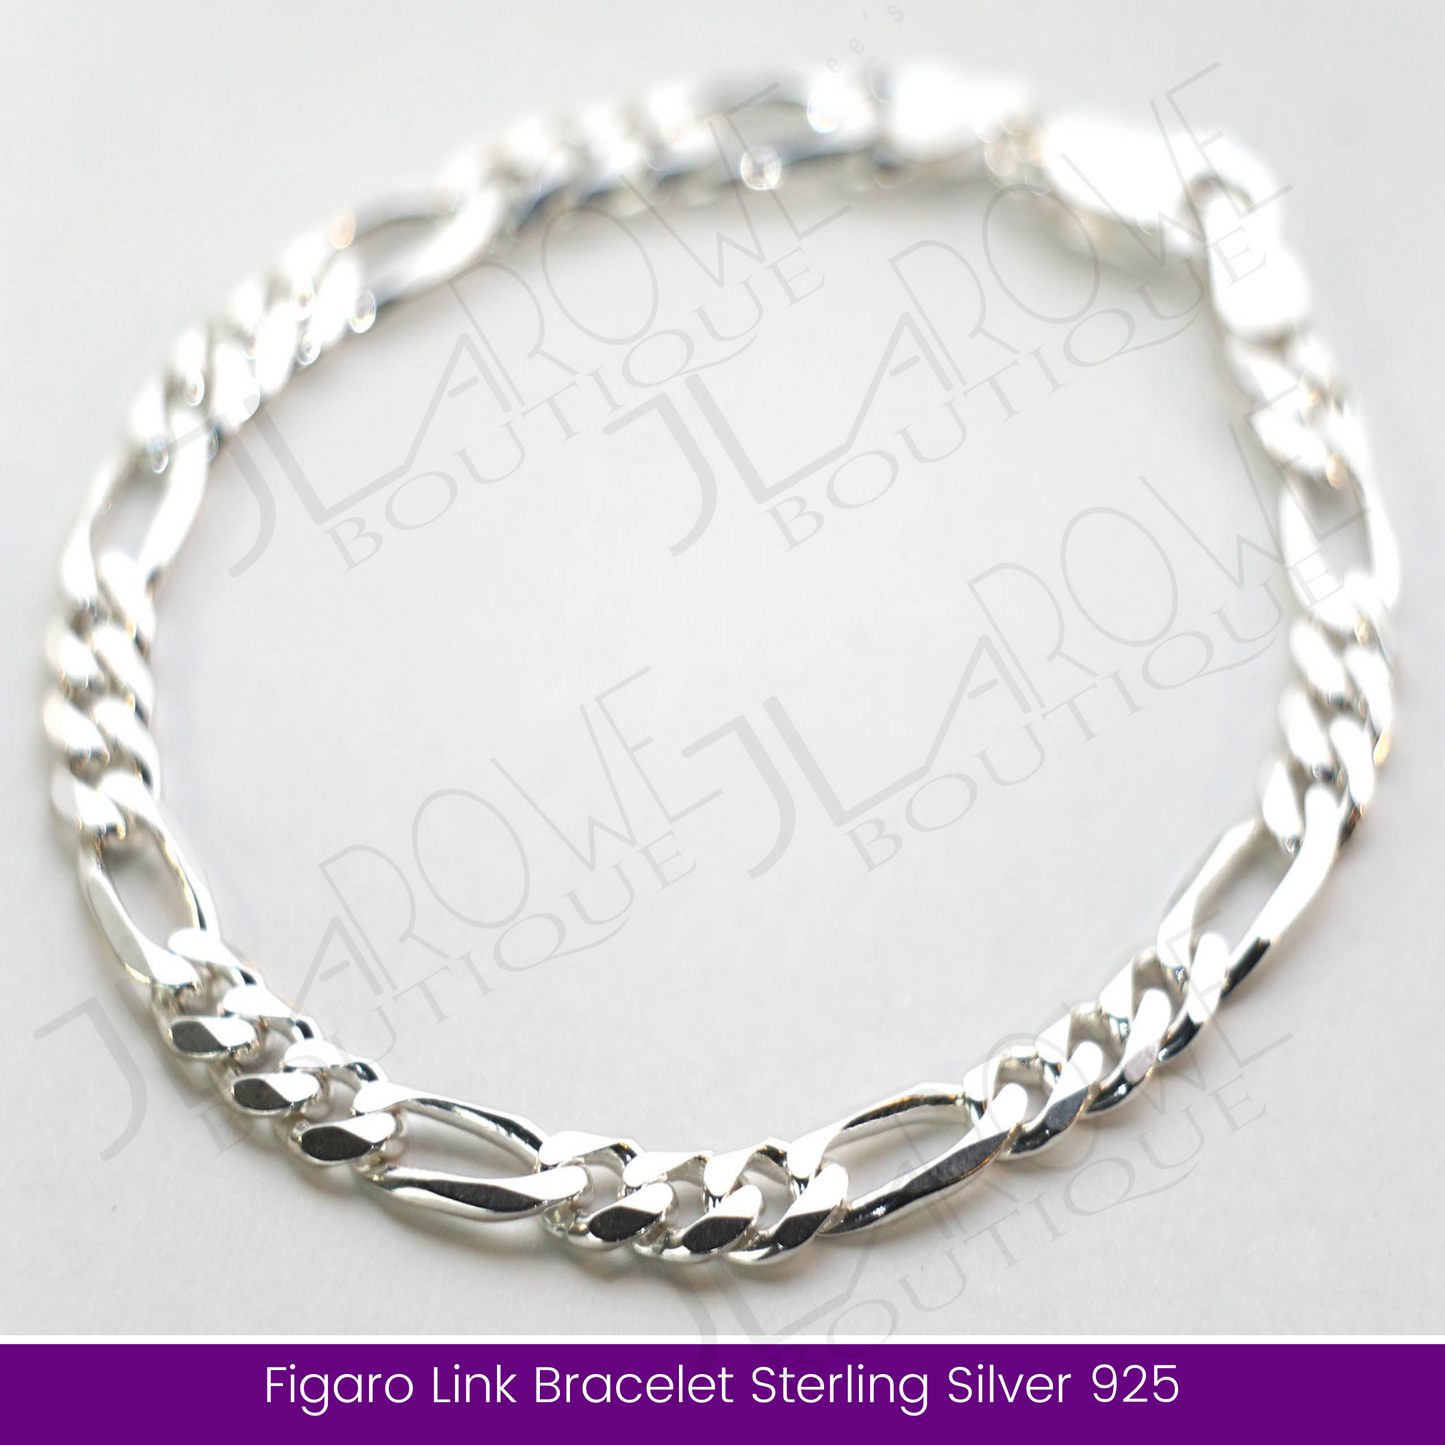 Figaro Link Bracelet Sterling Silver 925 (Limited Stock)